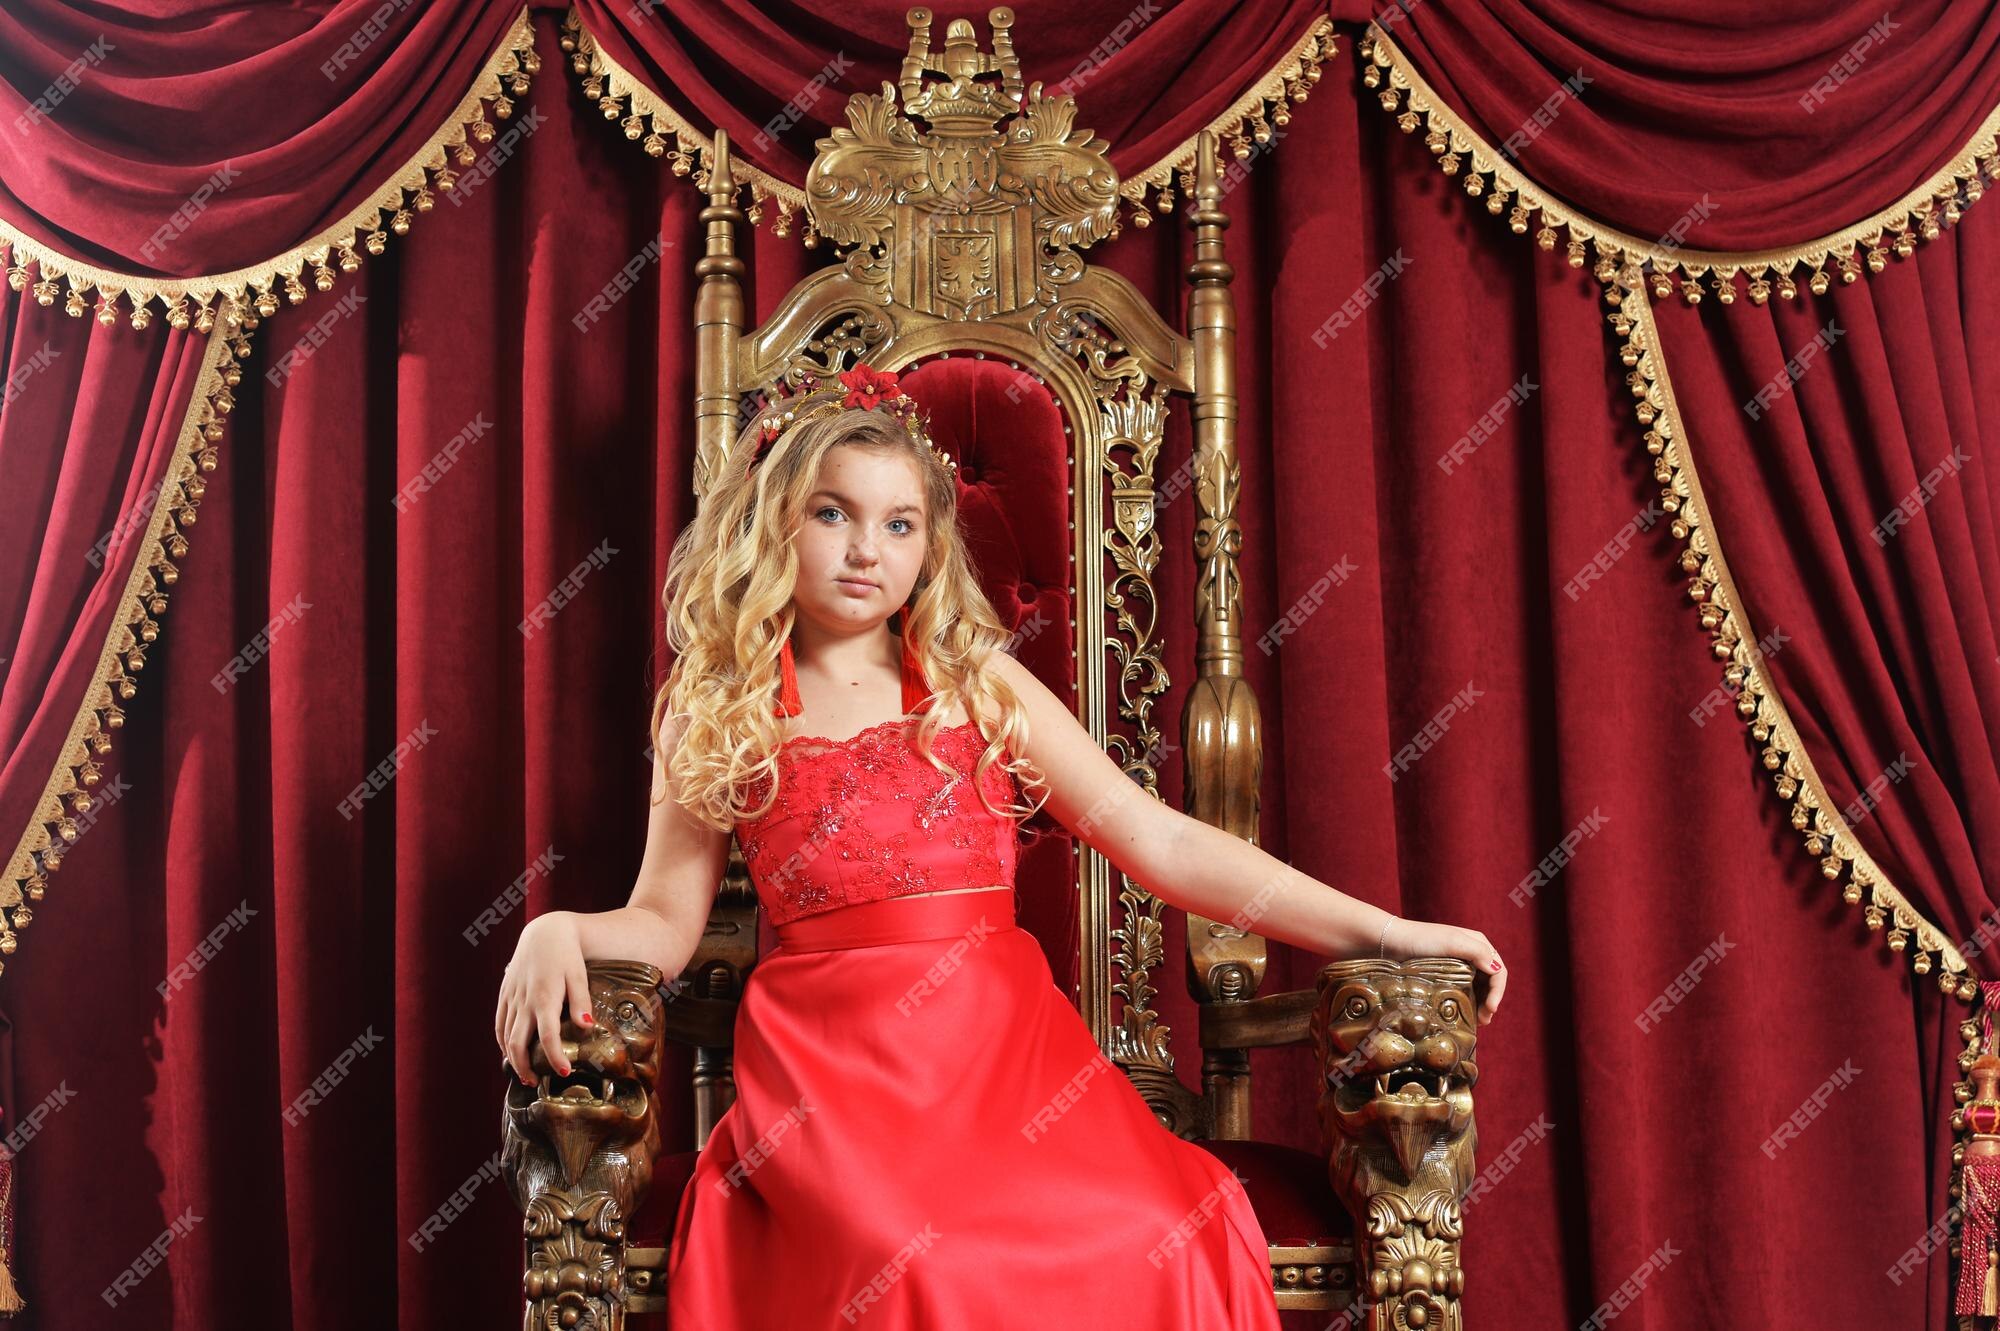 Una adolescente rubia con un vestido rojo brillante sentada en una silla antigua | Premium